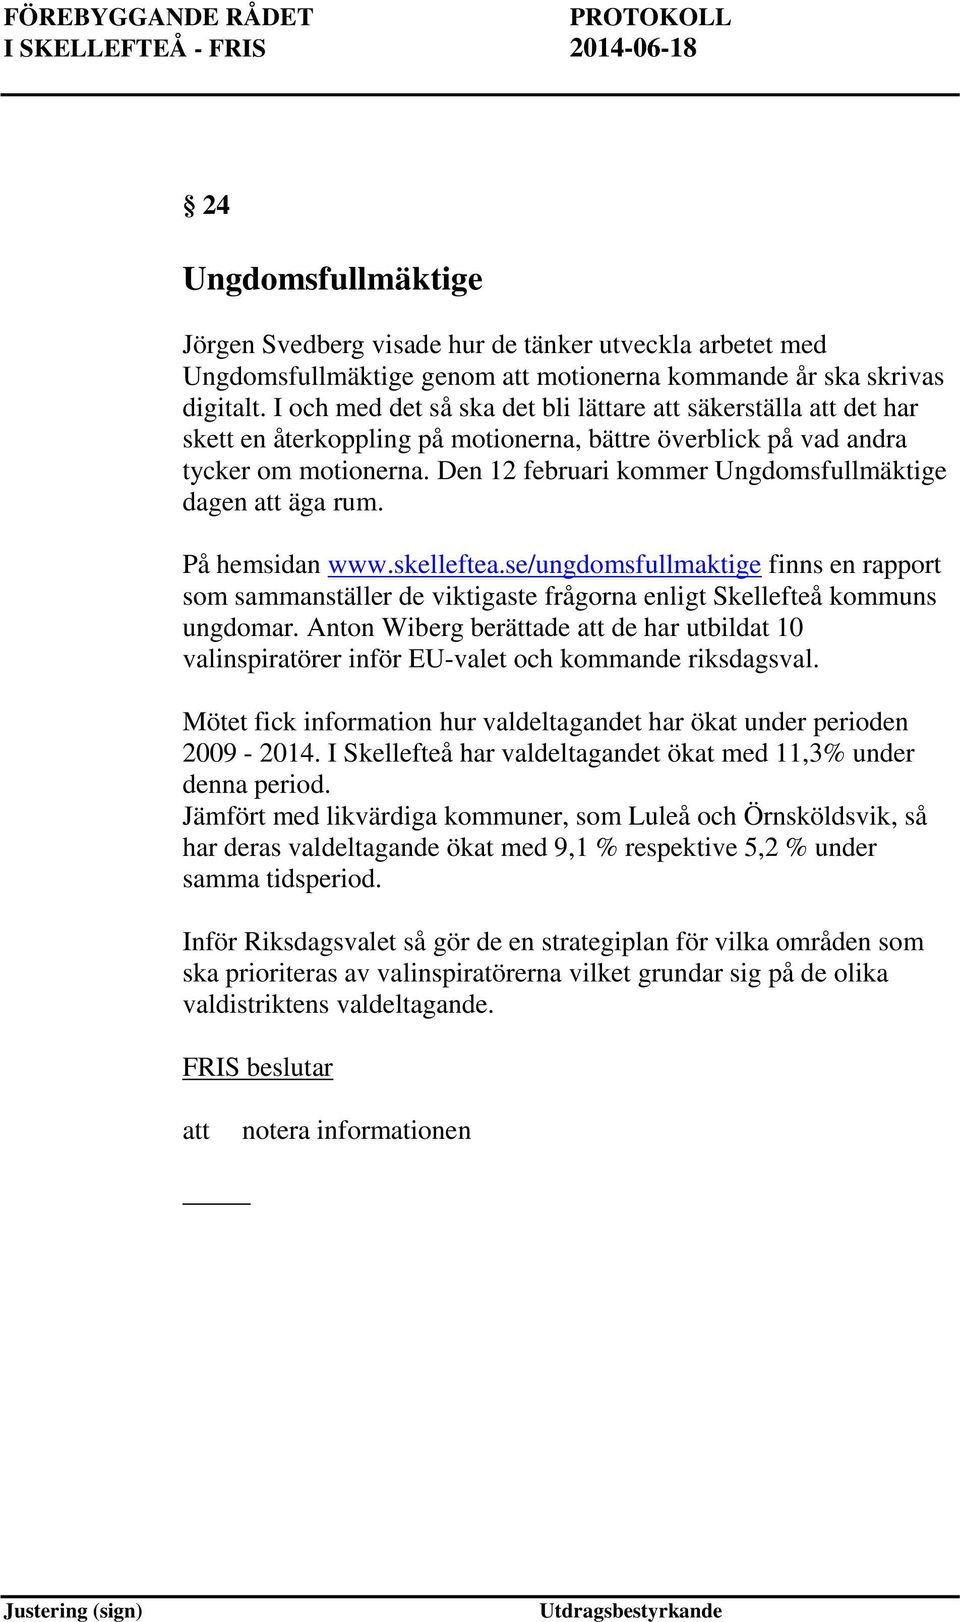 Den 12 februari kommer Ungdomsfullmäktige dagen äga rum. På hemsidan www.skelleftea.se/ungdomsfullmaktige finns en rapport som sammanställer de viktigaste frågorna enligt Skellefteå kommuns ungdomar.